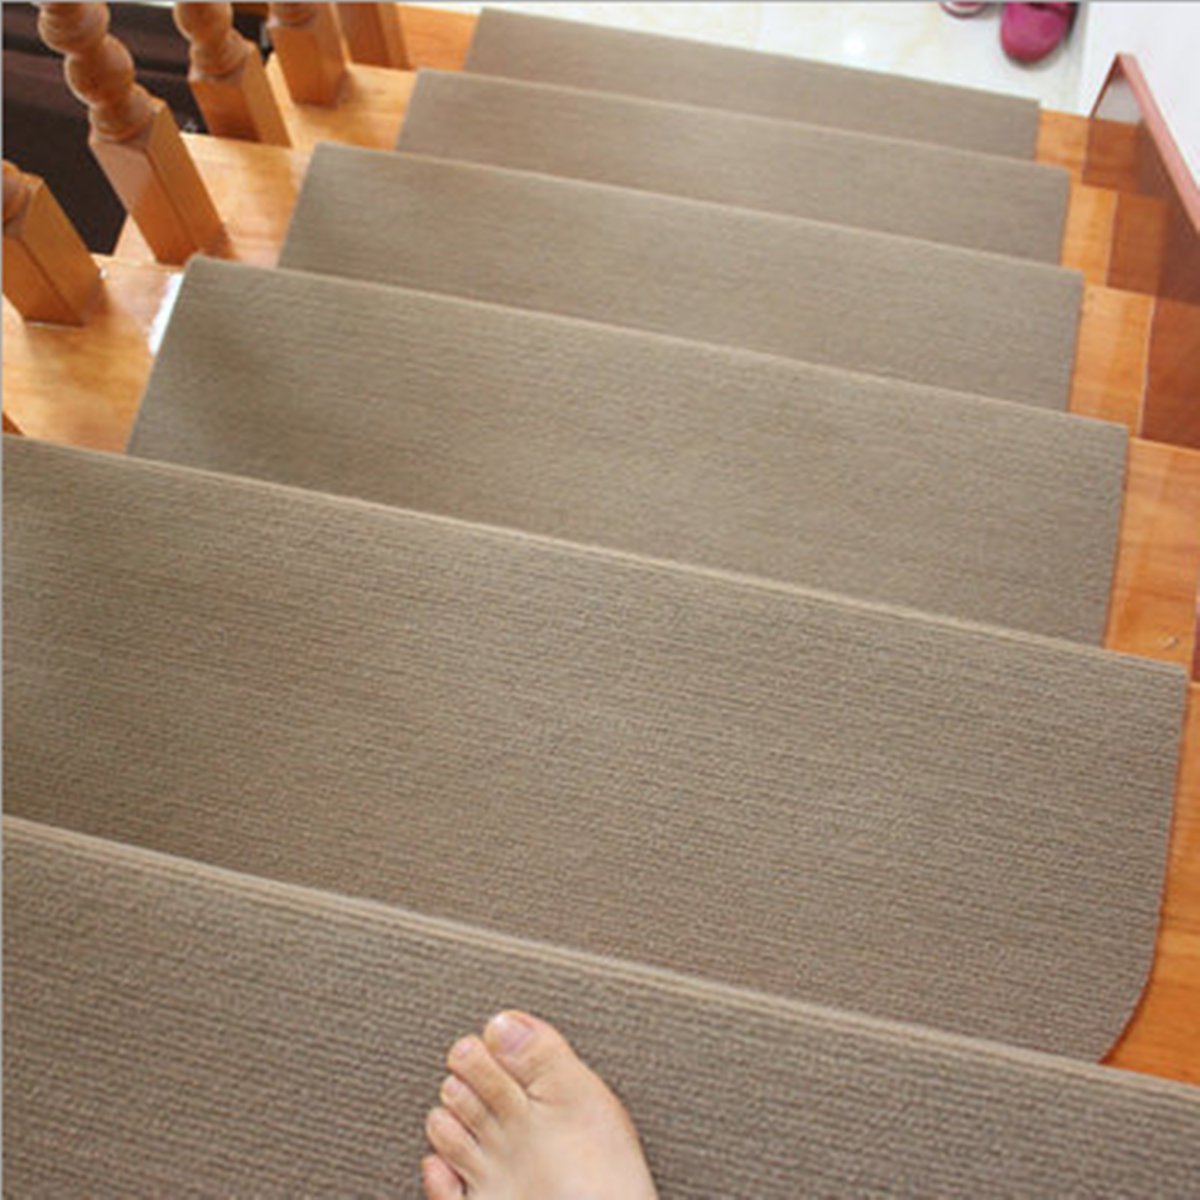 Morden Stair Mat Brown Household Carpet Stair PadTread Non-slip Step Rug